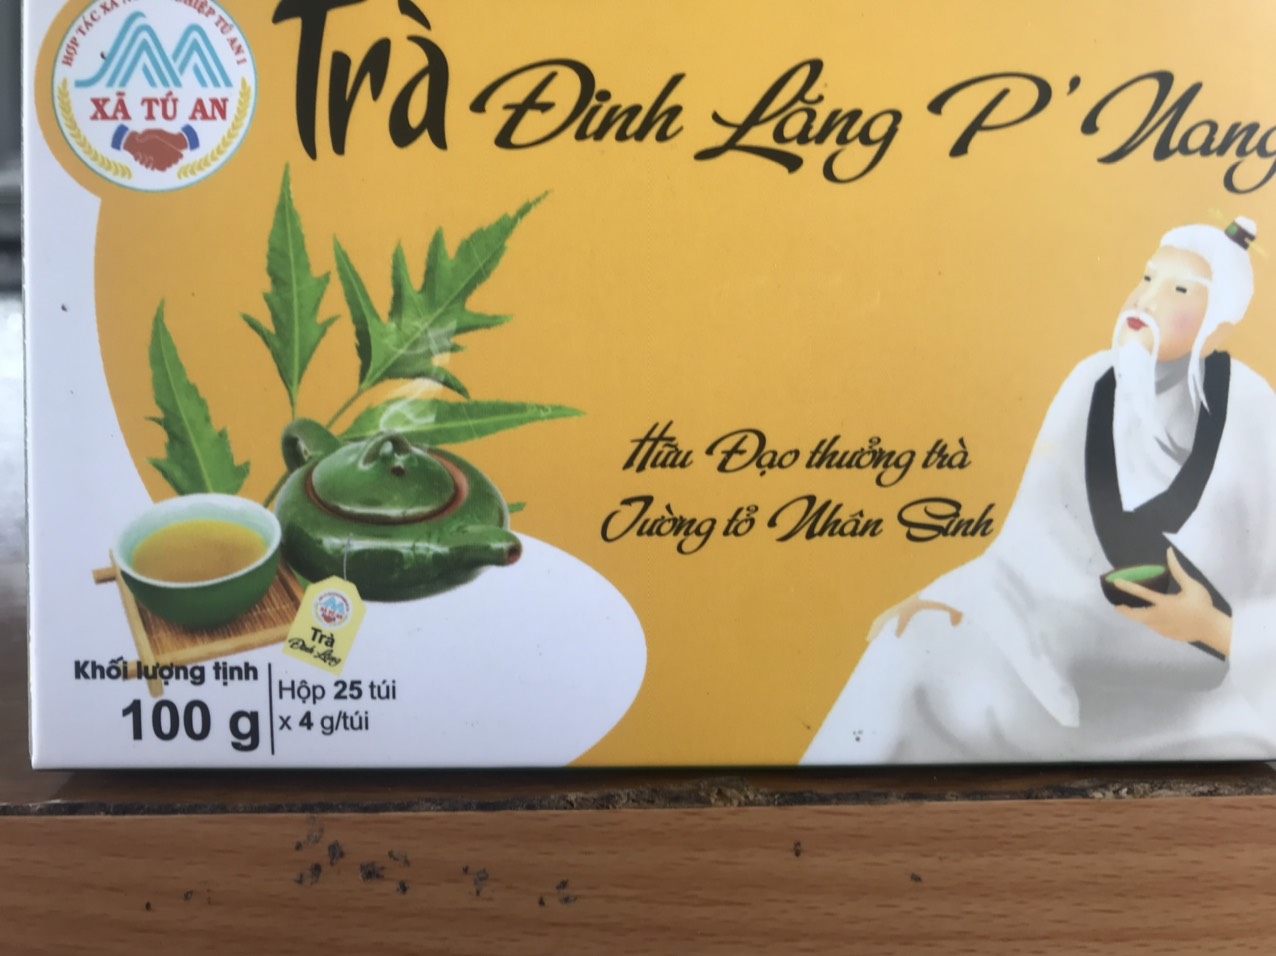 p'nang dingling tea